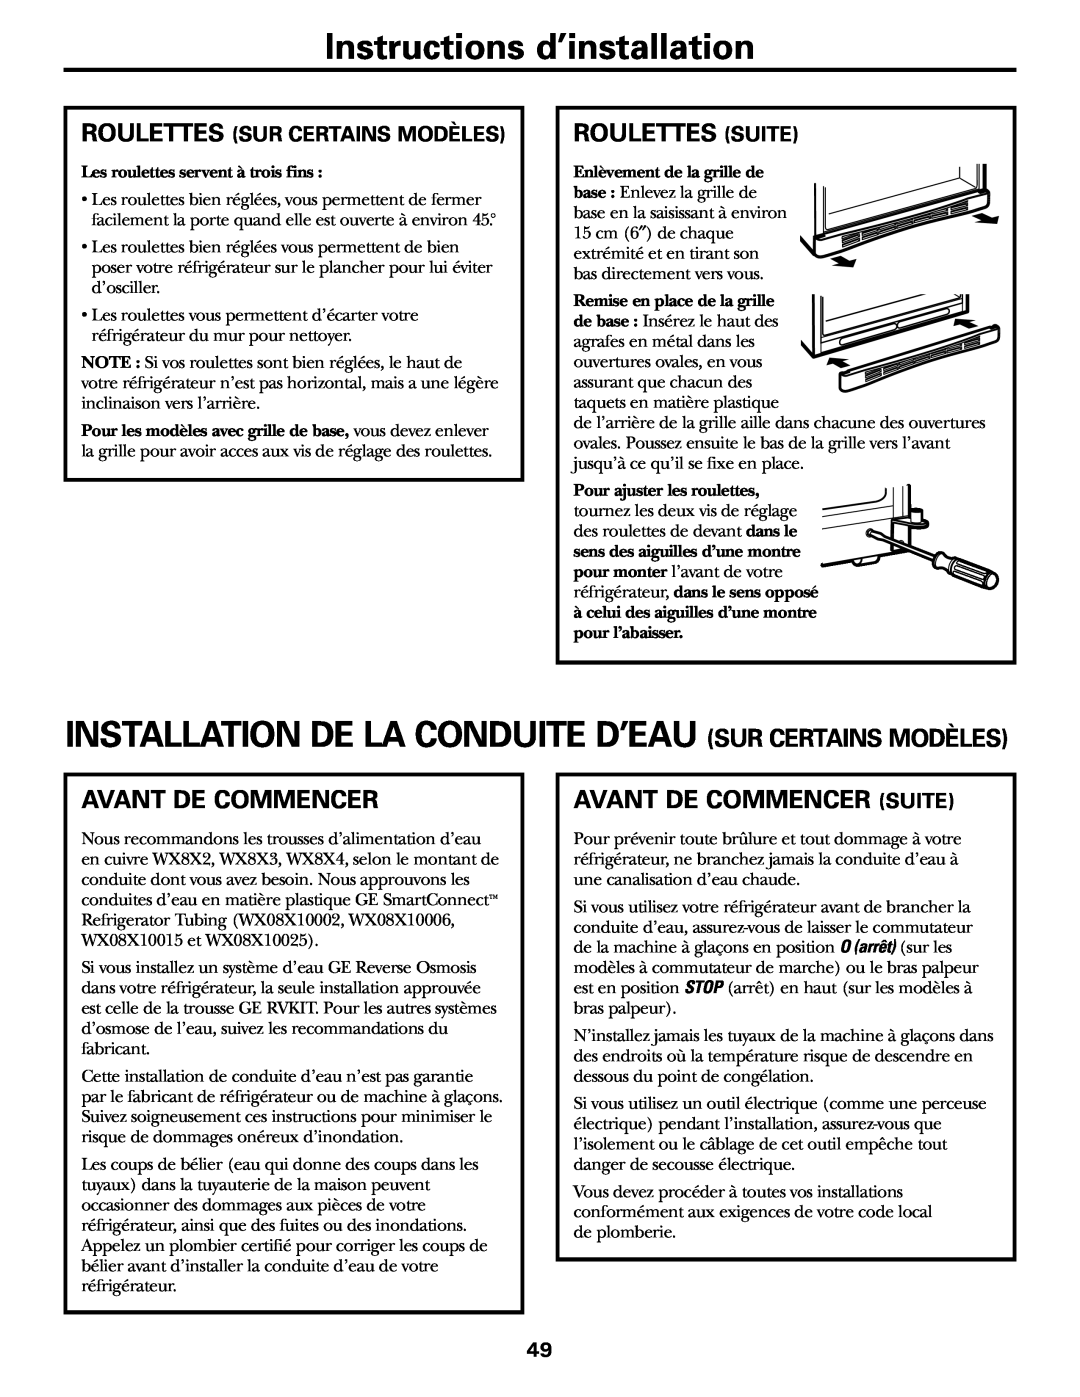 GE 18, 19 Instructions d’installation, Roulettes Suite, Avant De Commencer Suite, Roulettes Sur Certains Modèles 